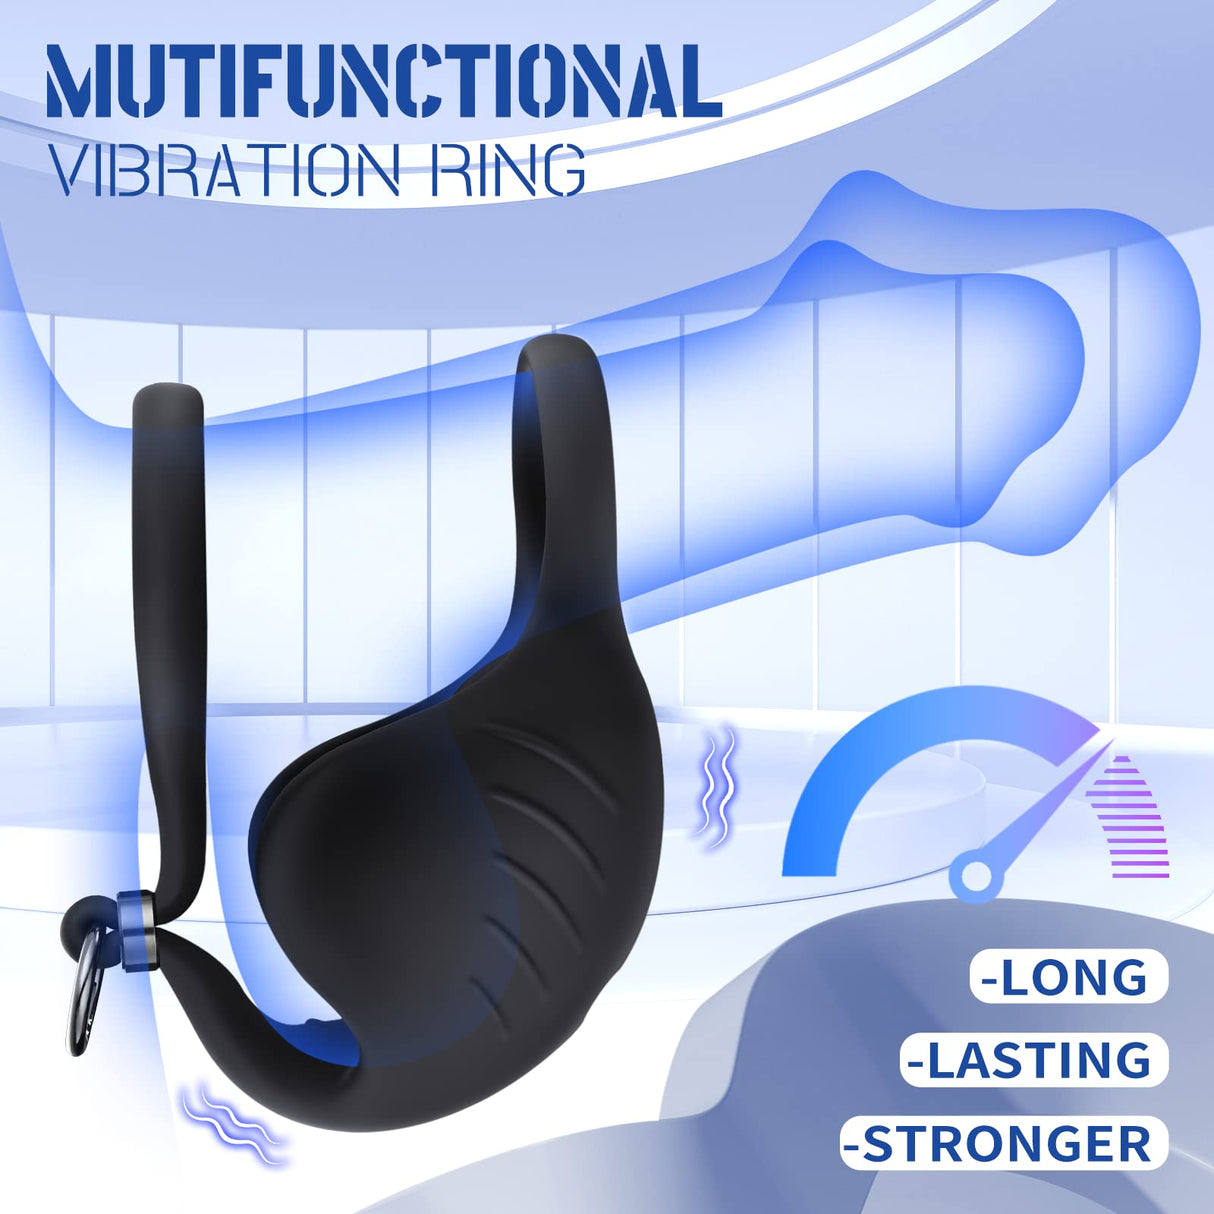 Vibrating Cock Ring 9 modes Male Vibrator